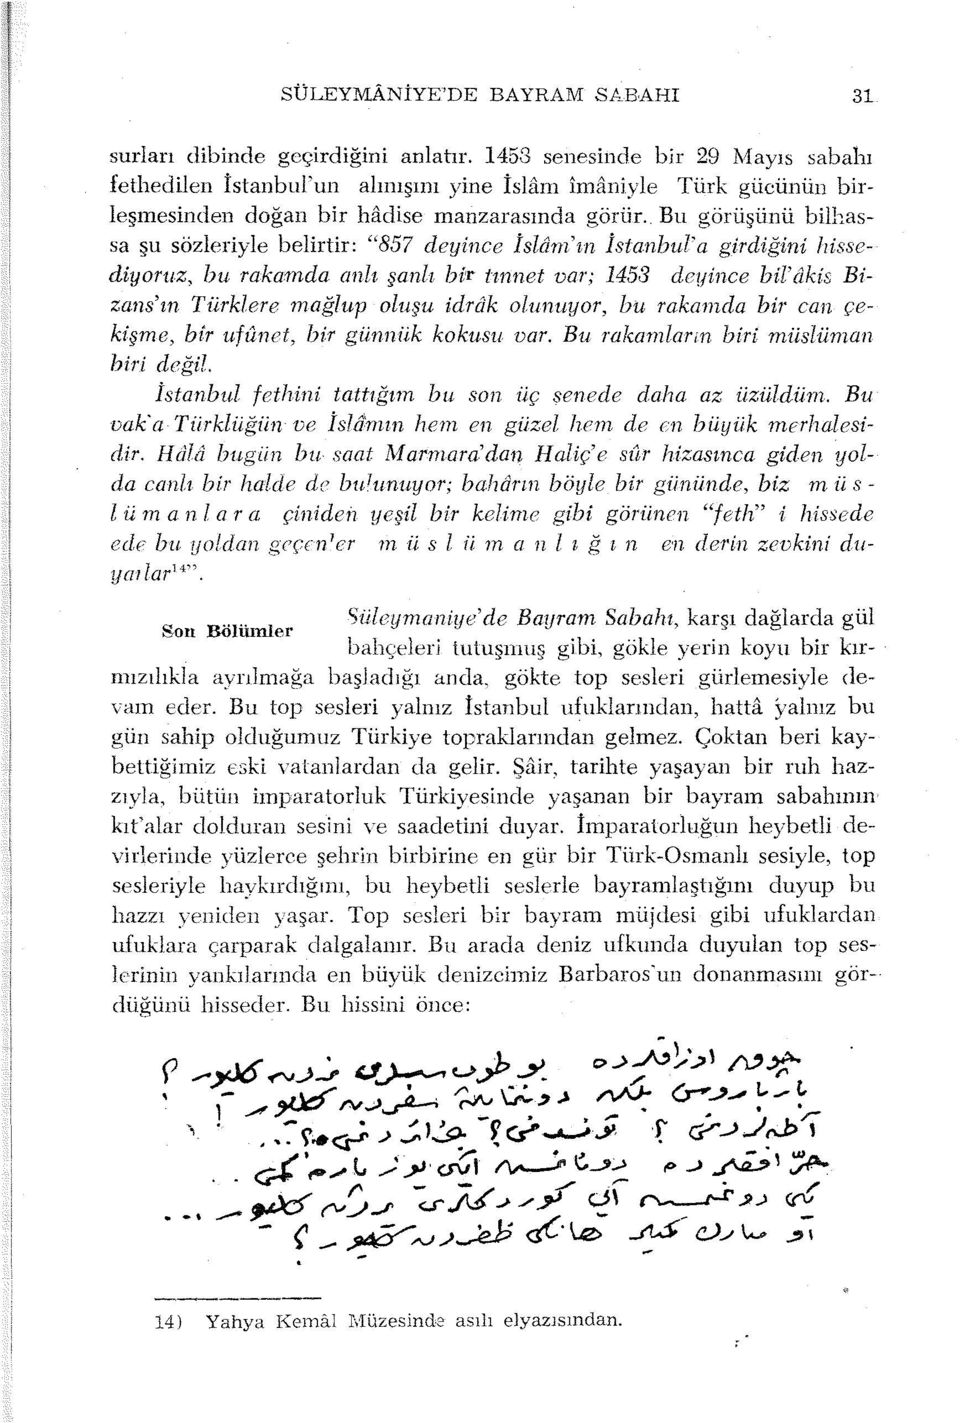 Bu görüşünü bilhassa şu sözleriyle belirtir: "857 deyince İslam'ın İstanbul'a girdiğini hissediyoruz, bu rakatııda an lı şanlı bi'r tınnet var; 1453 deyince bil' ôkis Bizans'ın Türklere mağlup oluşu